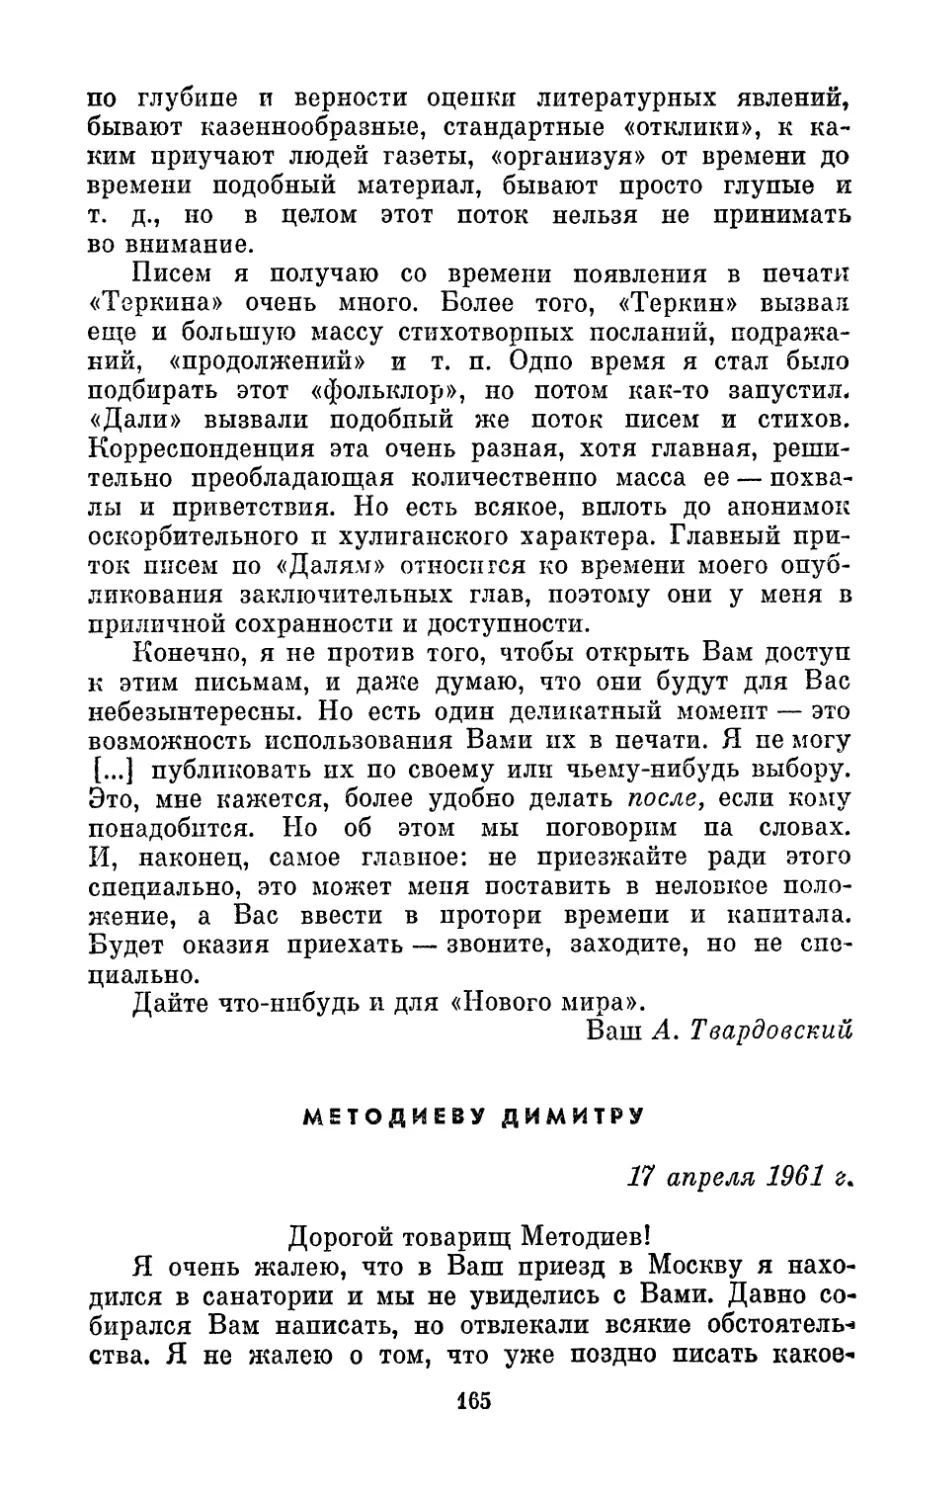 Методиеву Димитру, 17 апреля 1961 г.